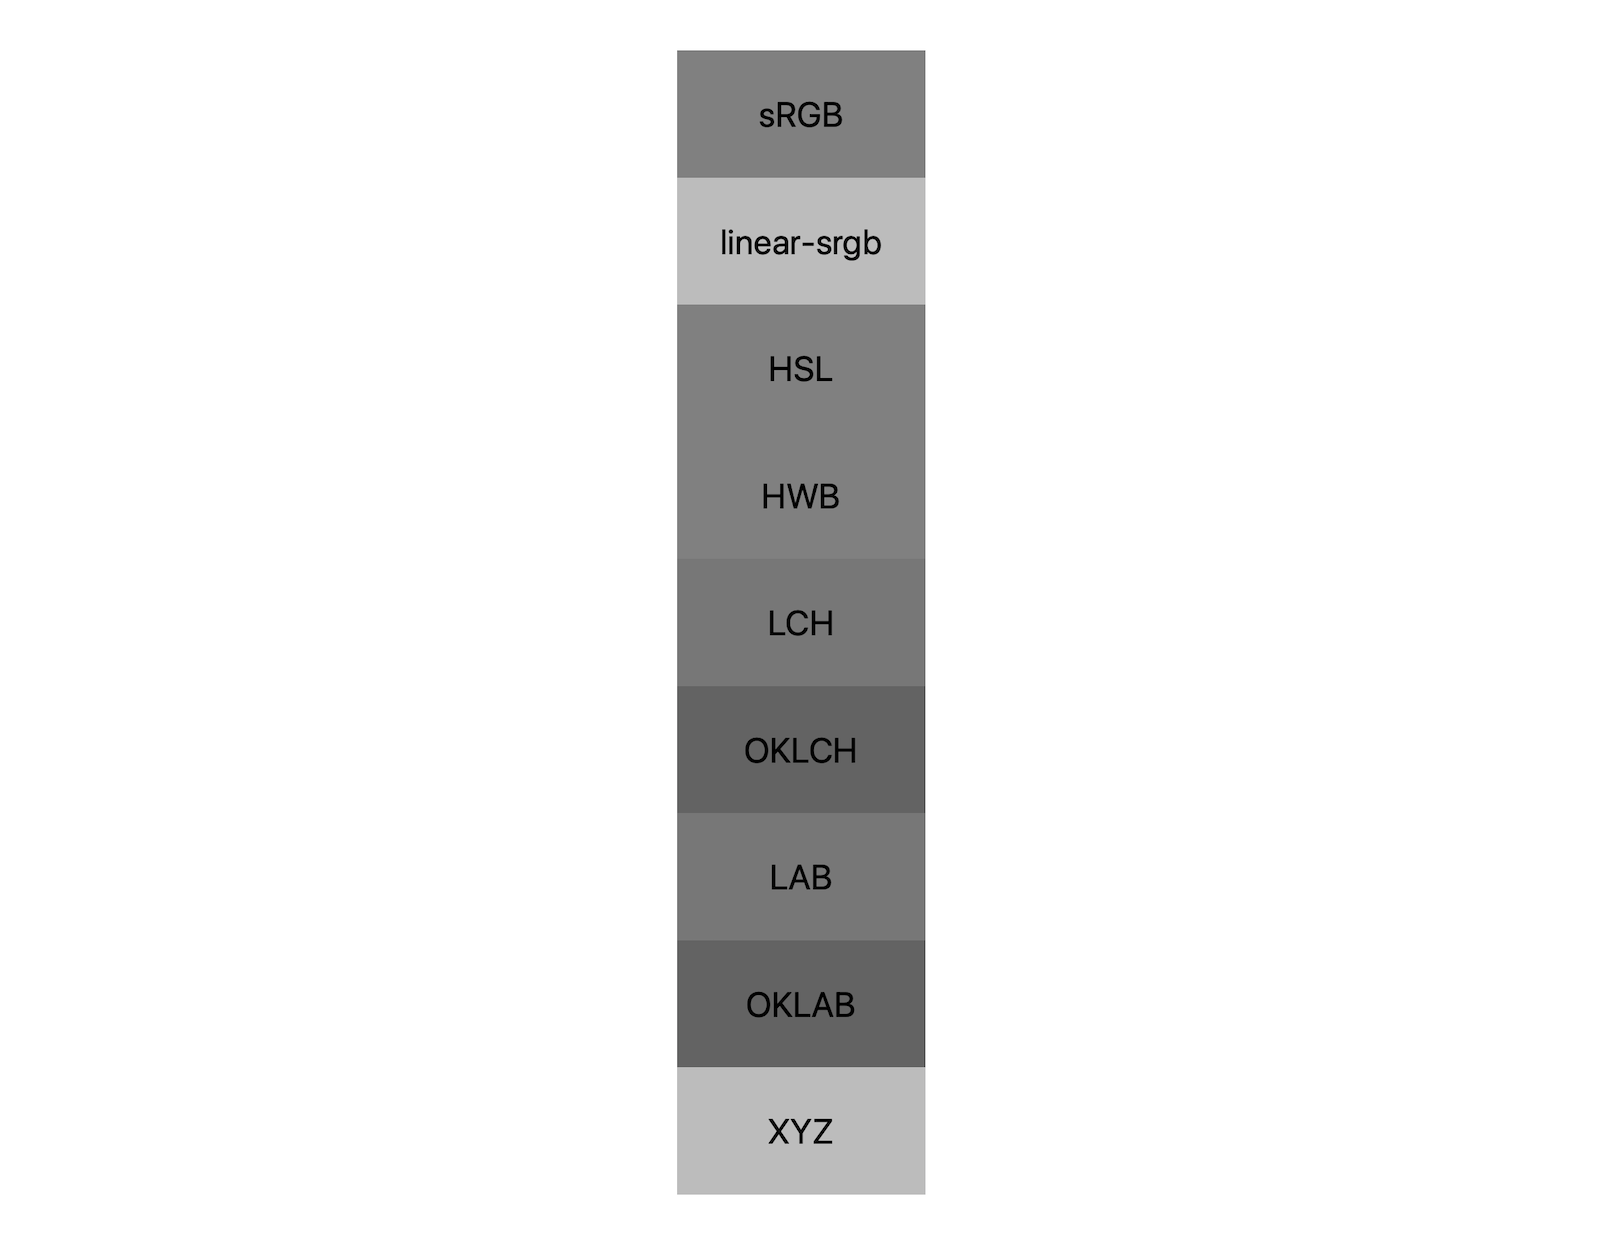 7 个颜色空间（srgb、linear-srgb、lch、oklch、lab、oklab、xyz）分别显示了黑白混合效果。下面大约显示了 5 种不同的色调，表明每种颜色空间甚至可以以不同的方式混合成不同的灰色。